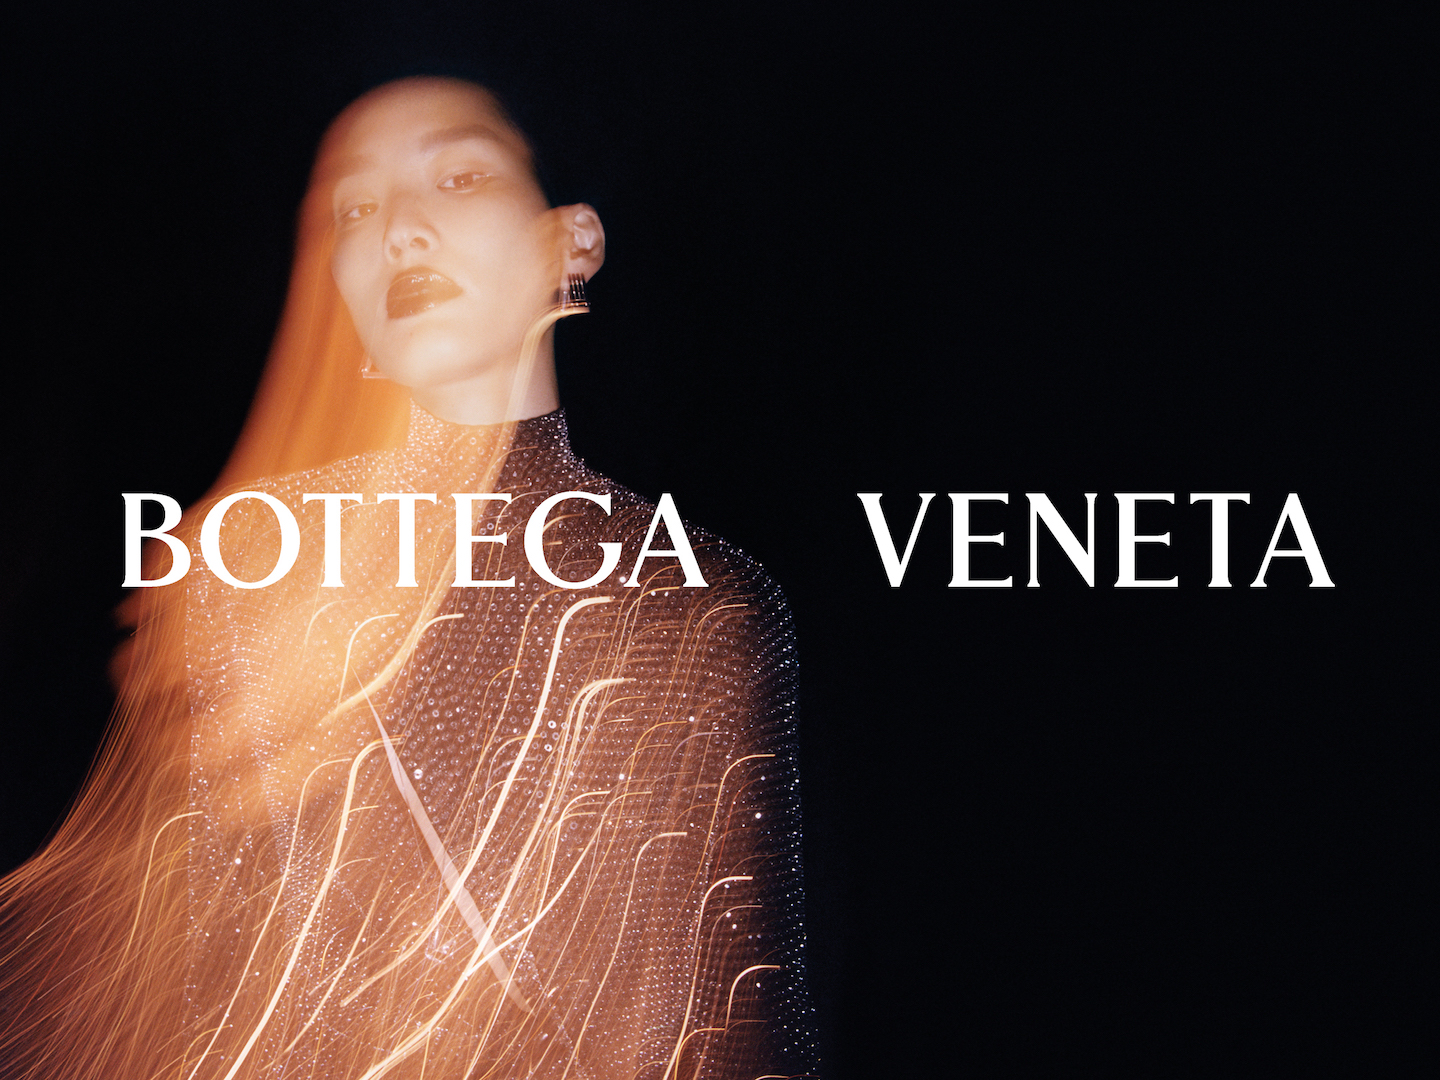 Bottega Veneta Salon 02 Collection Launches - V Magazine